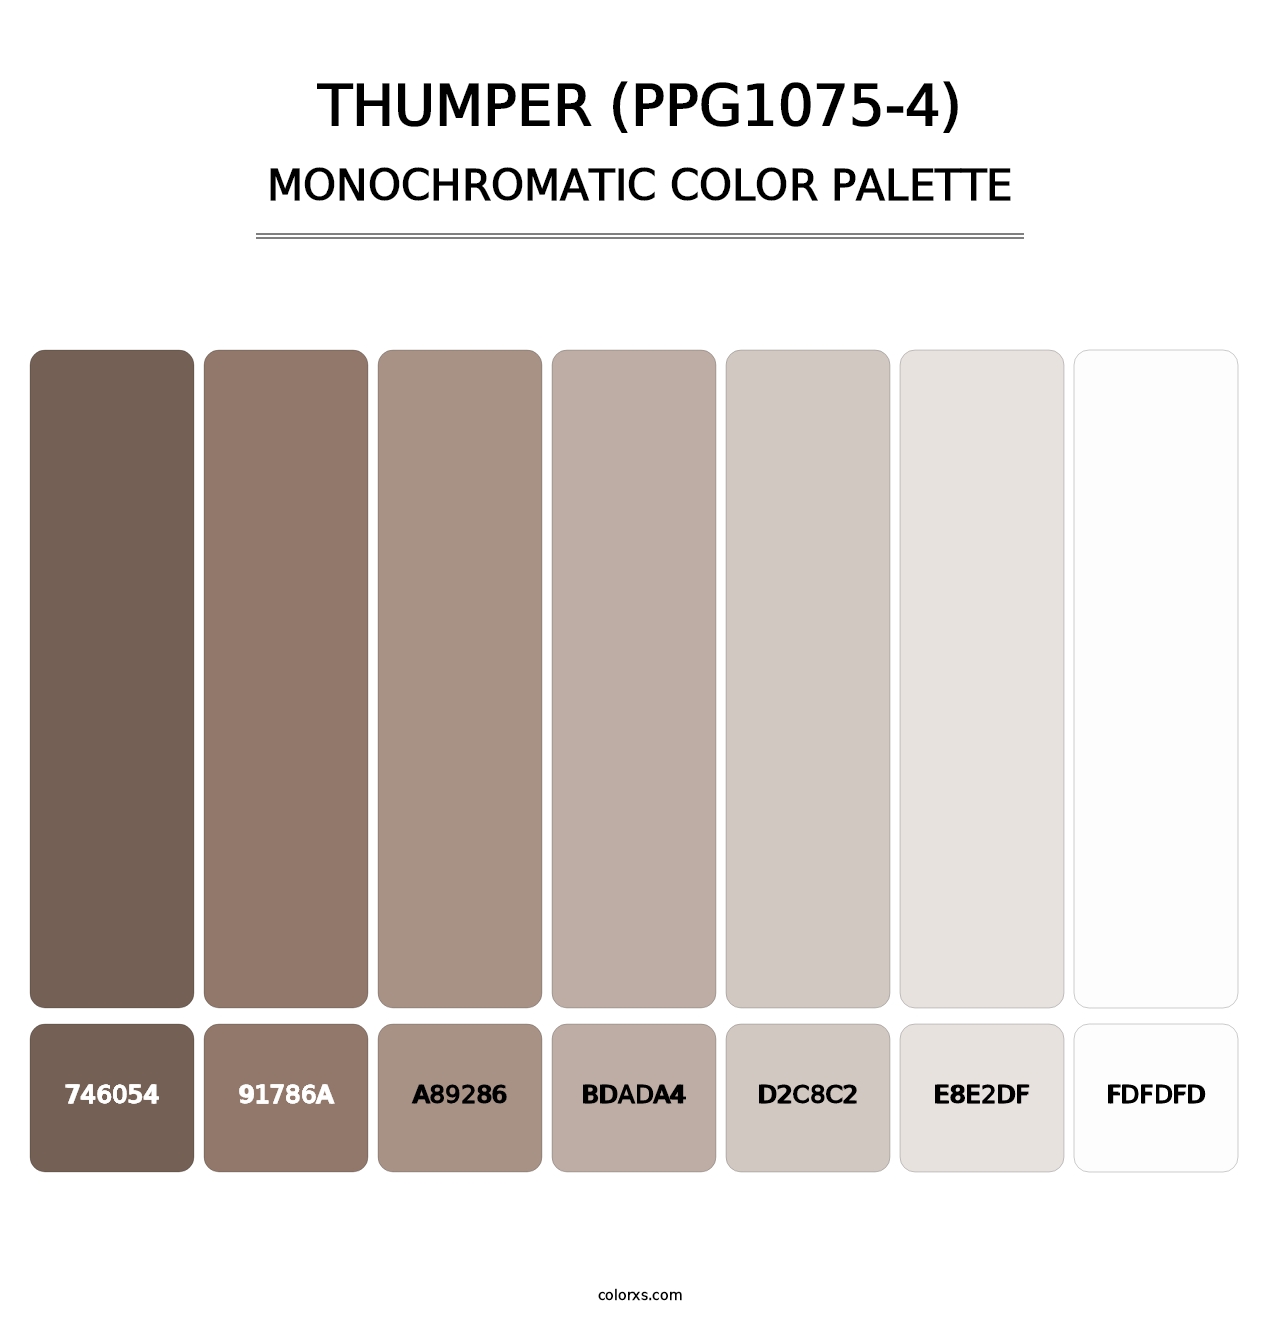 Thumper (PPG1075-4) - Monochromatic Color Palette